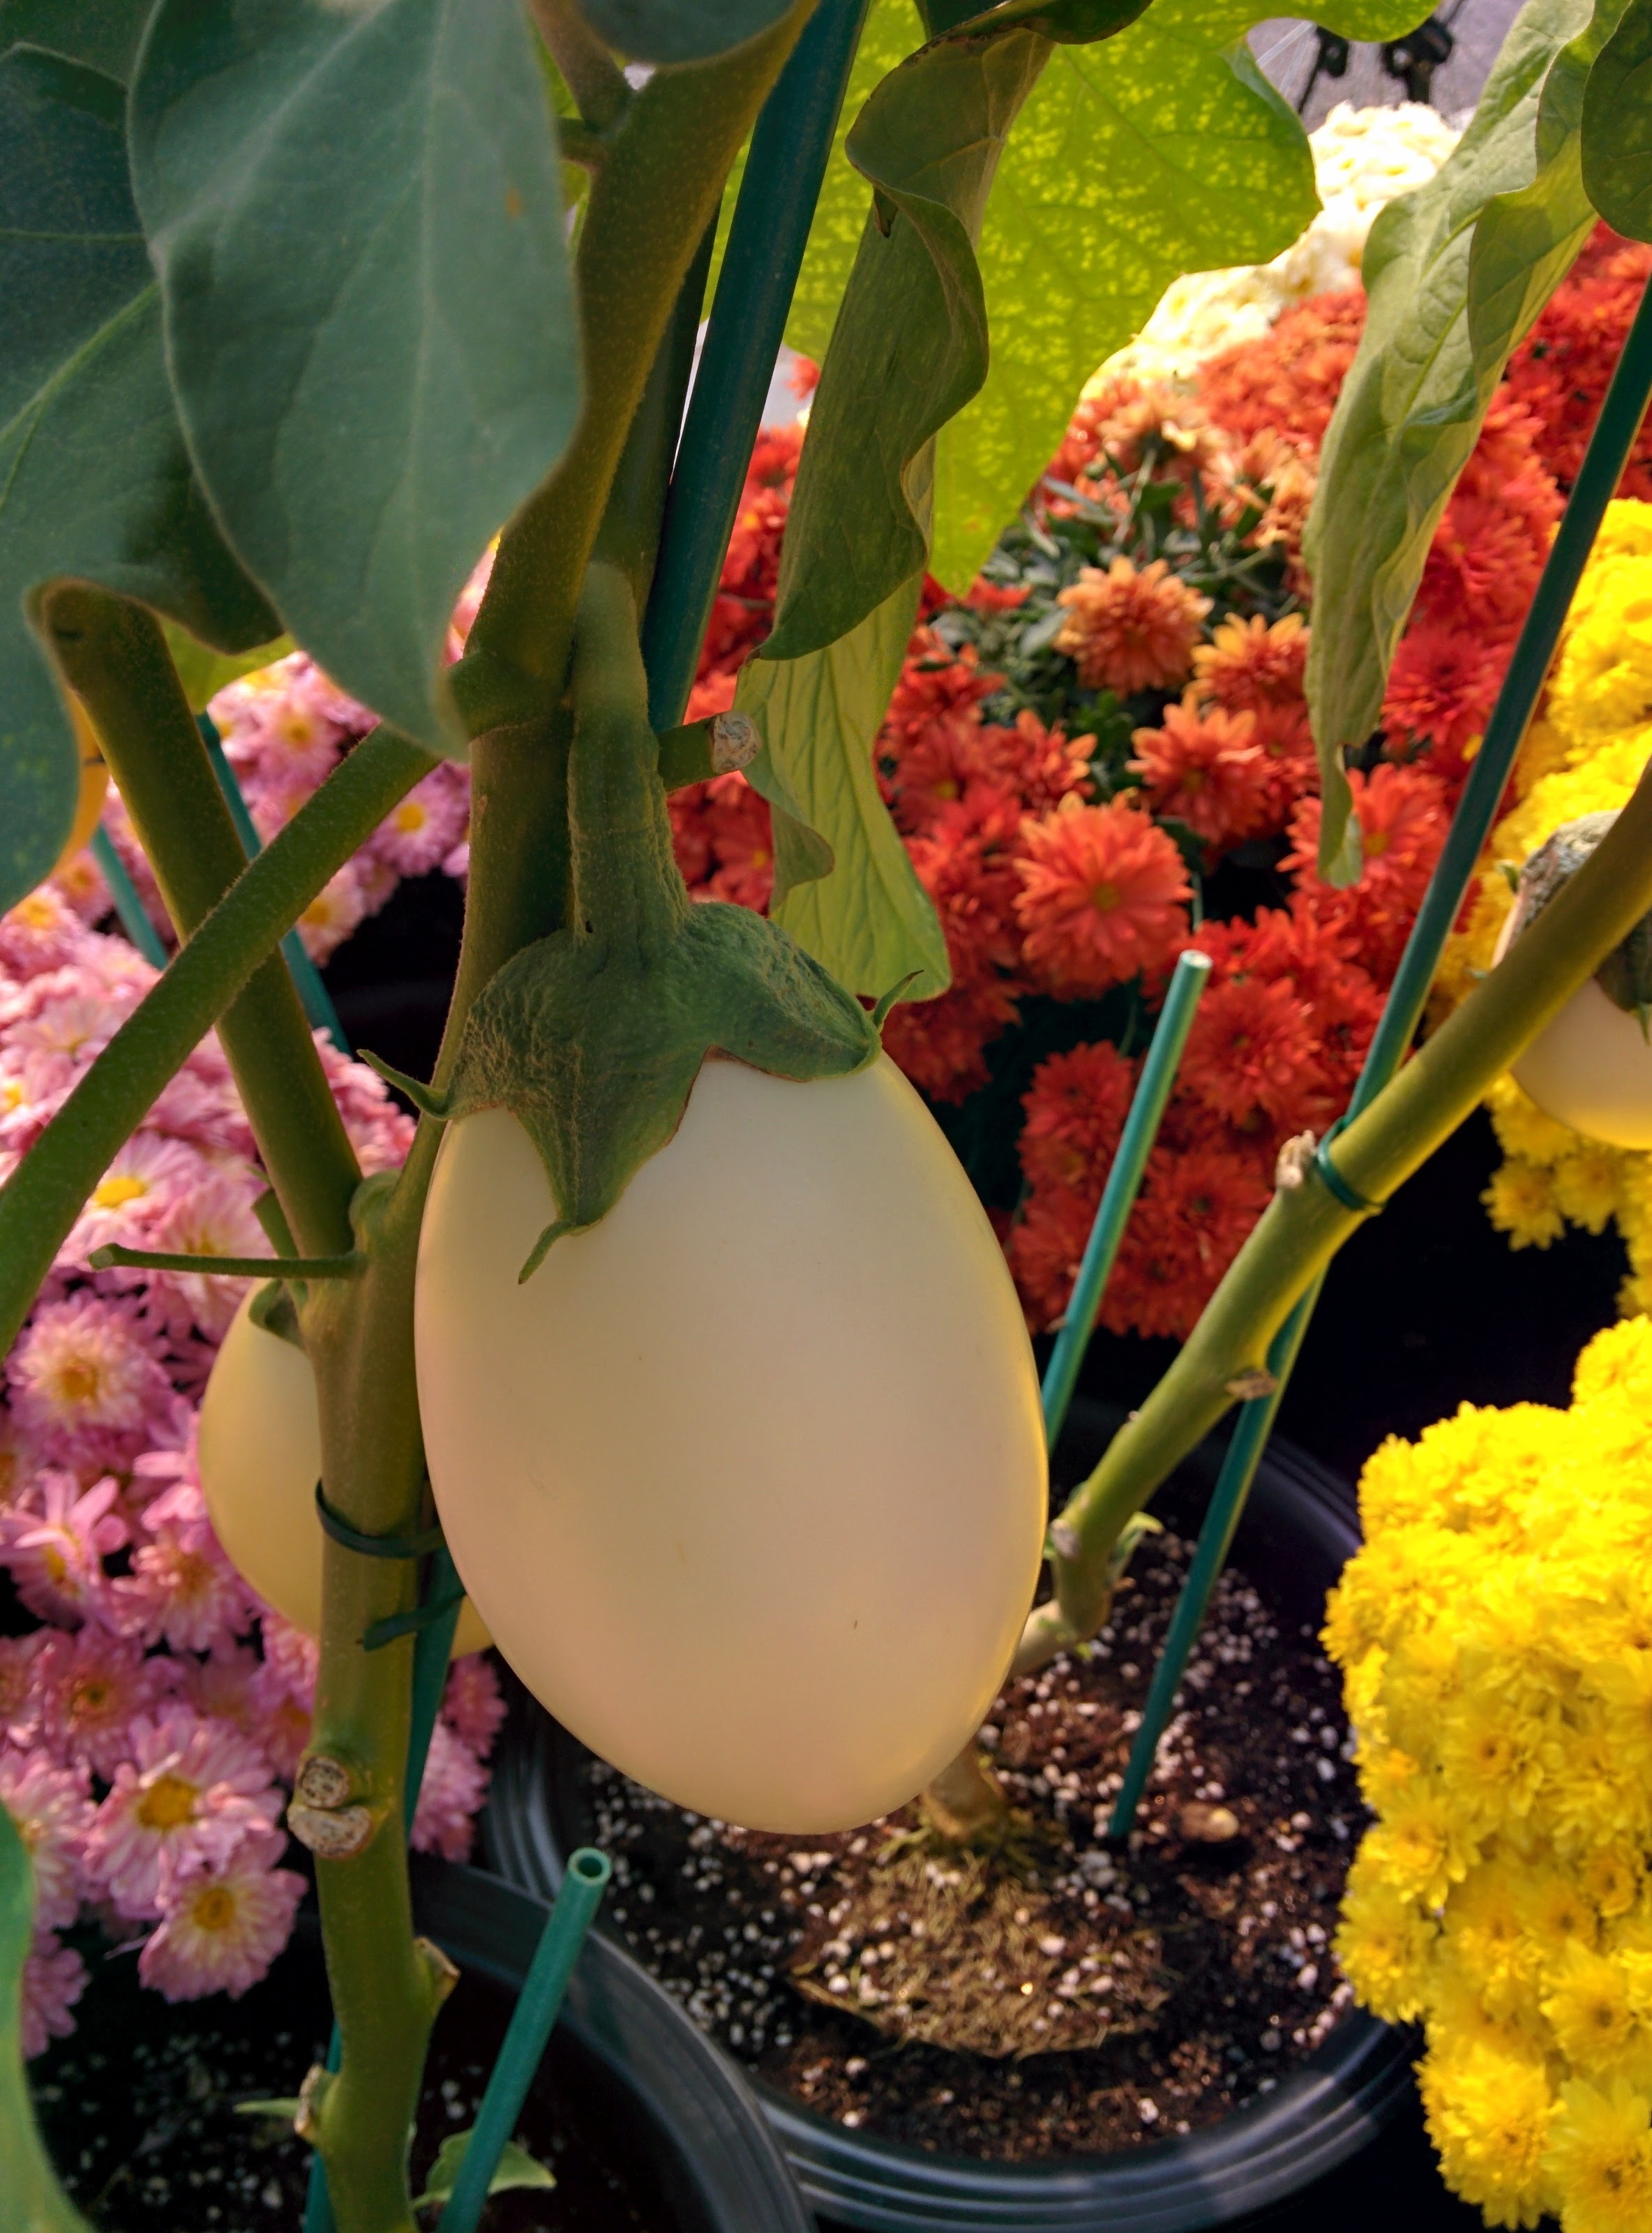 IMG_20151021_112552.jpg 달걀을 닮은 하얀색 노란색 열매 열린 계란가지, 연보라색 꽃